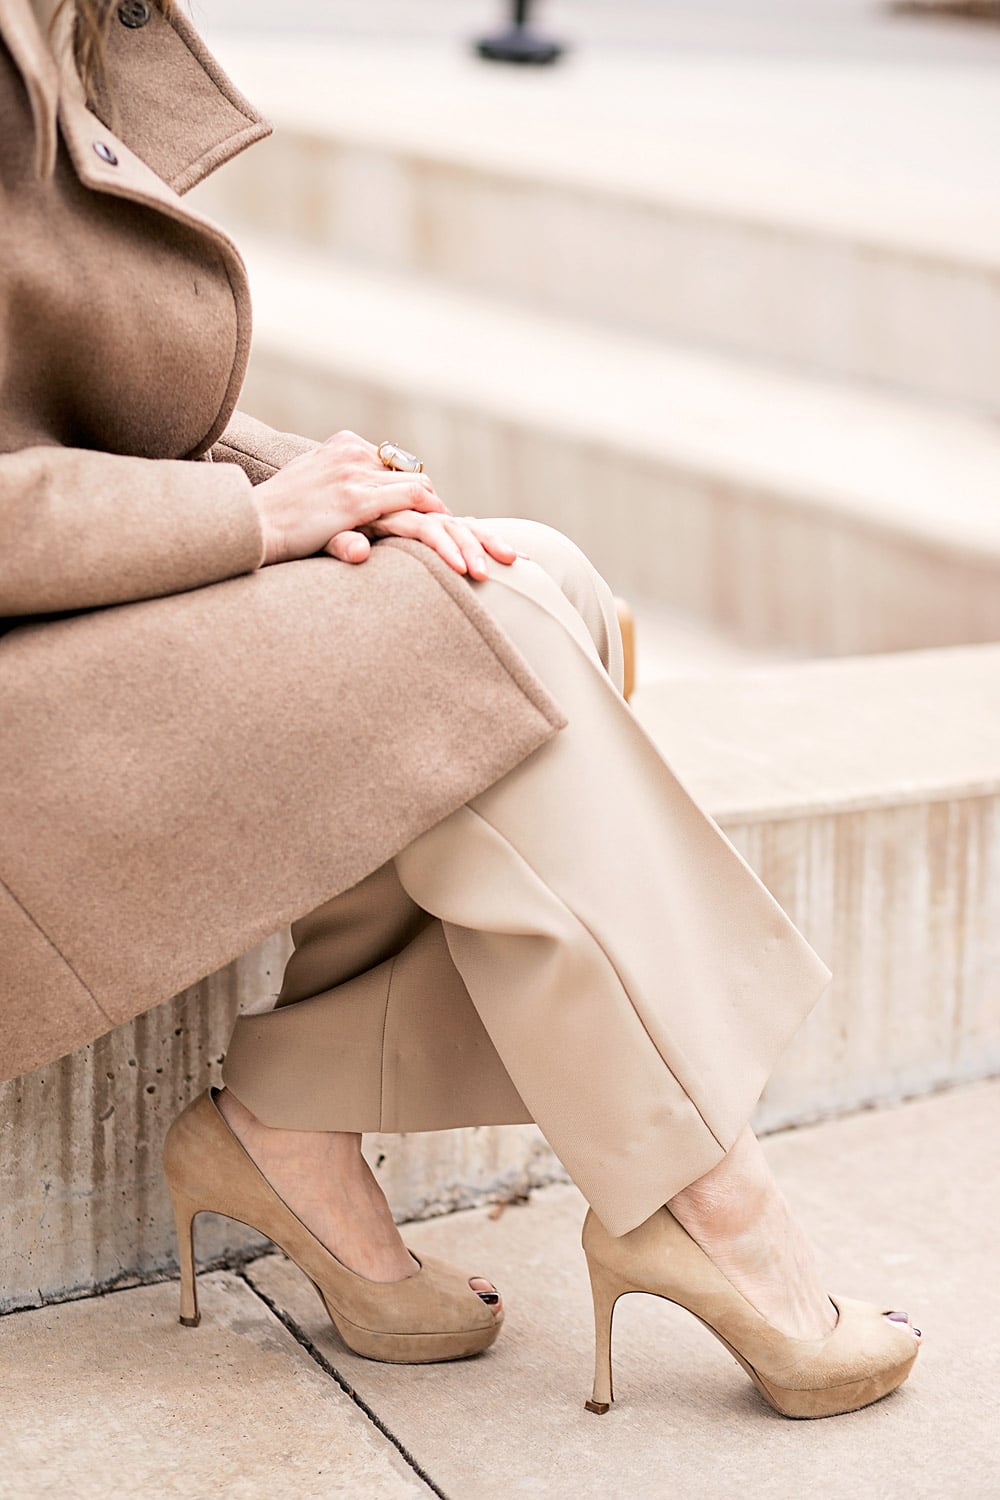 camel coat and beige coord set ysl platform heels